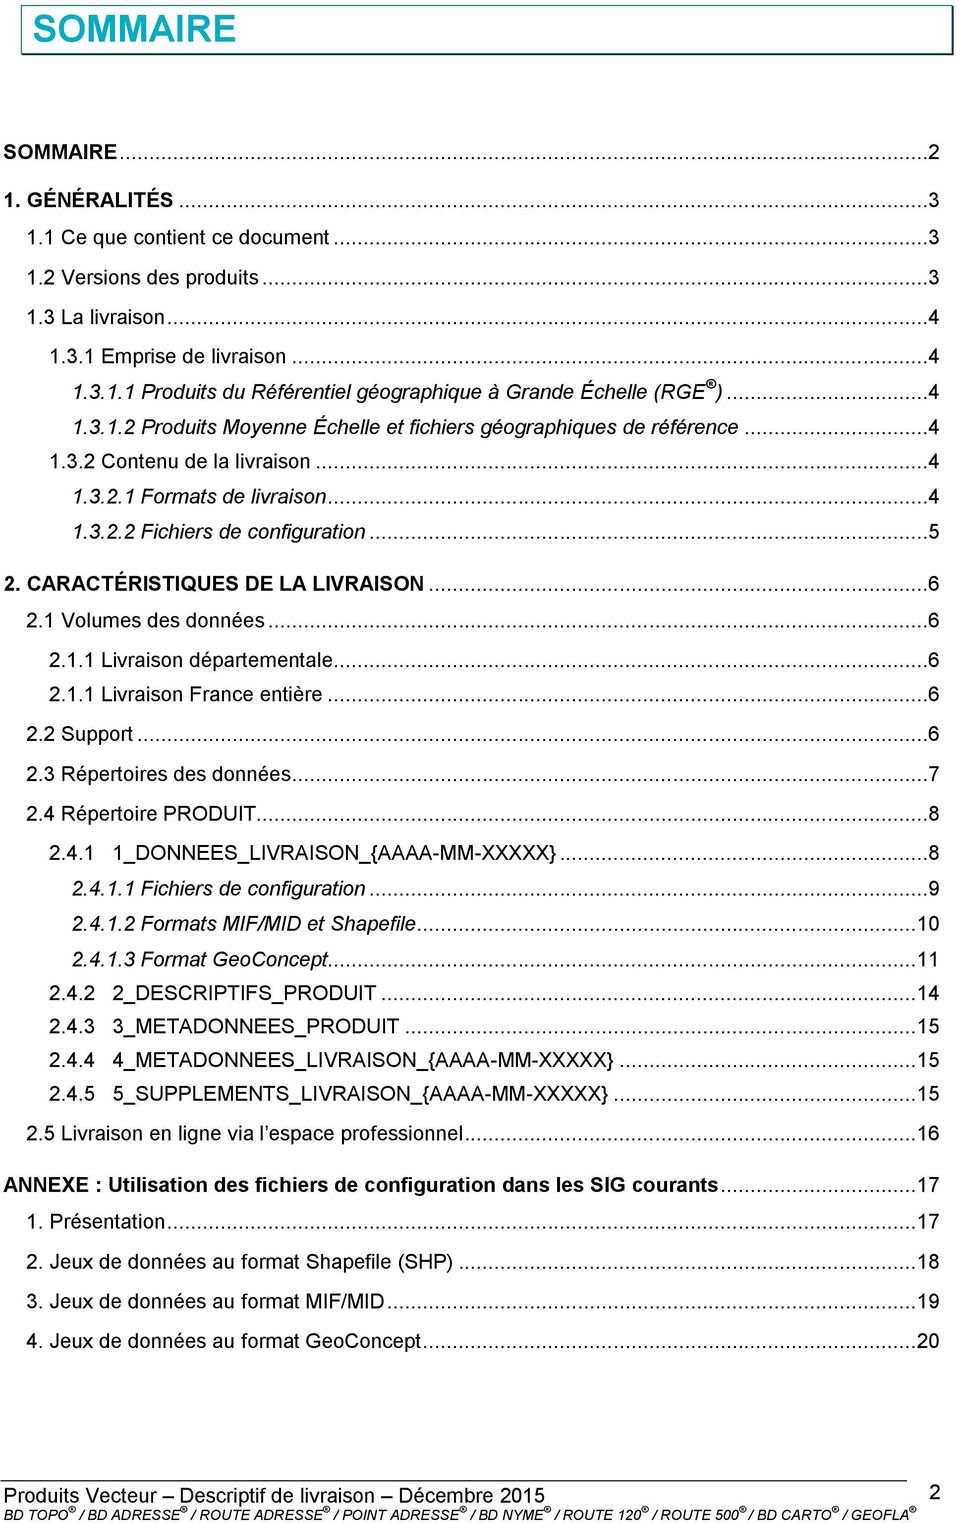 CARACTÉRISTIQUES DE LA LIVRAISON...6 2.1 Volumes des données...6 2.1.1 Livraison départementale...6 2.1.1 Livraison France entière...6 2.2 Support...6 2.3 Répertoires des données...7 2.